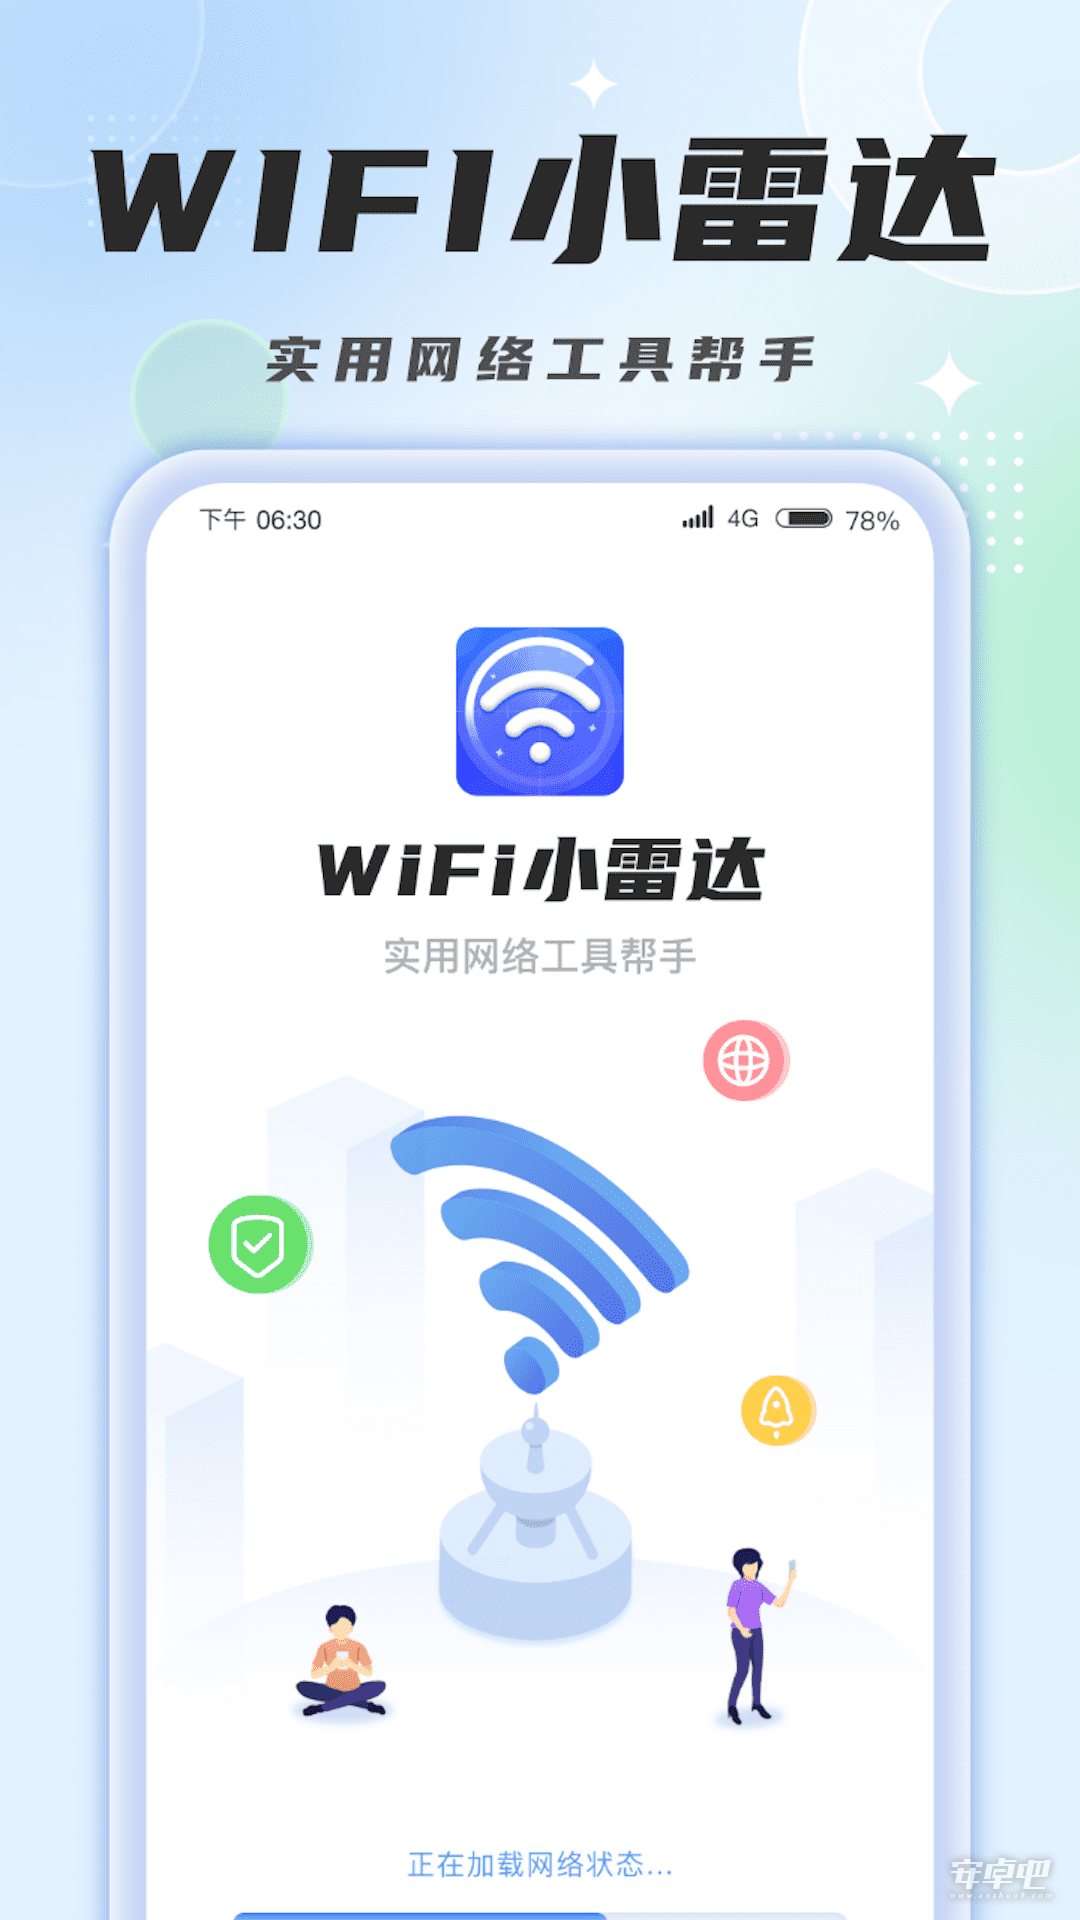 WiFi小雷达0